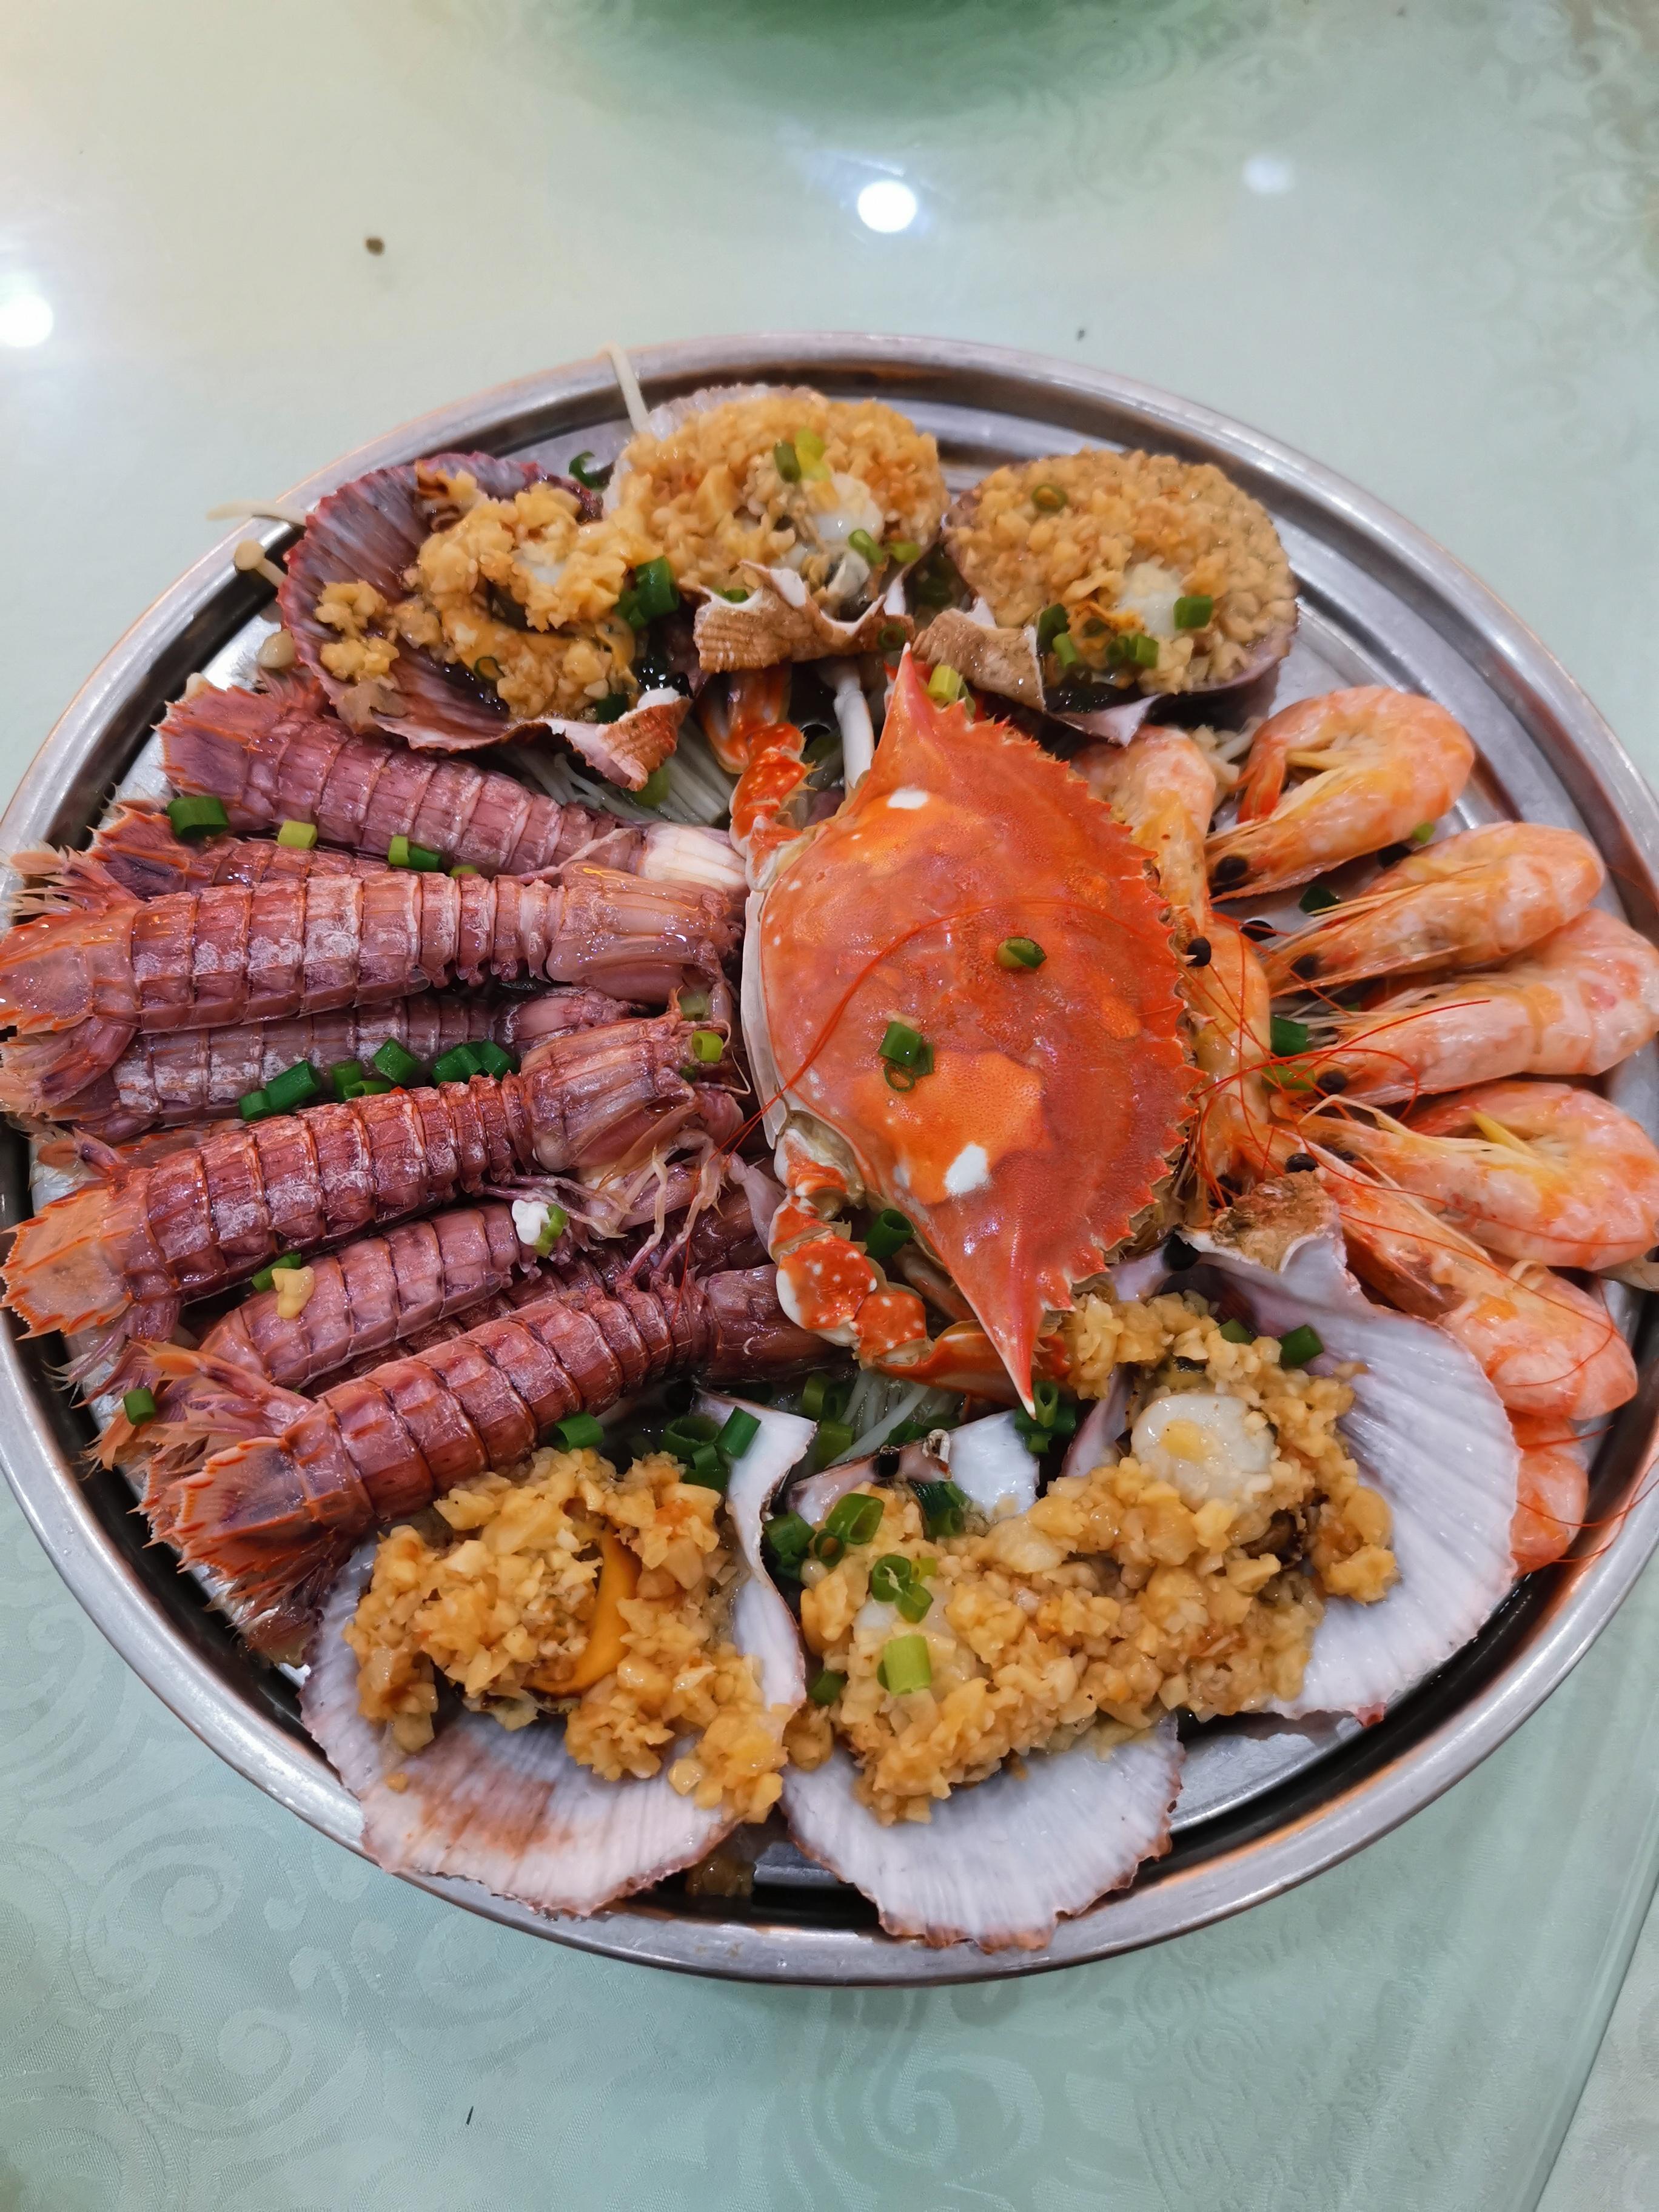 原创晒晒北戴河旅游区吃的海鲜晚餐,一桌1300元,大家看看值不值